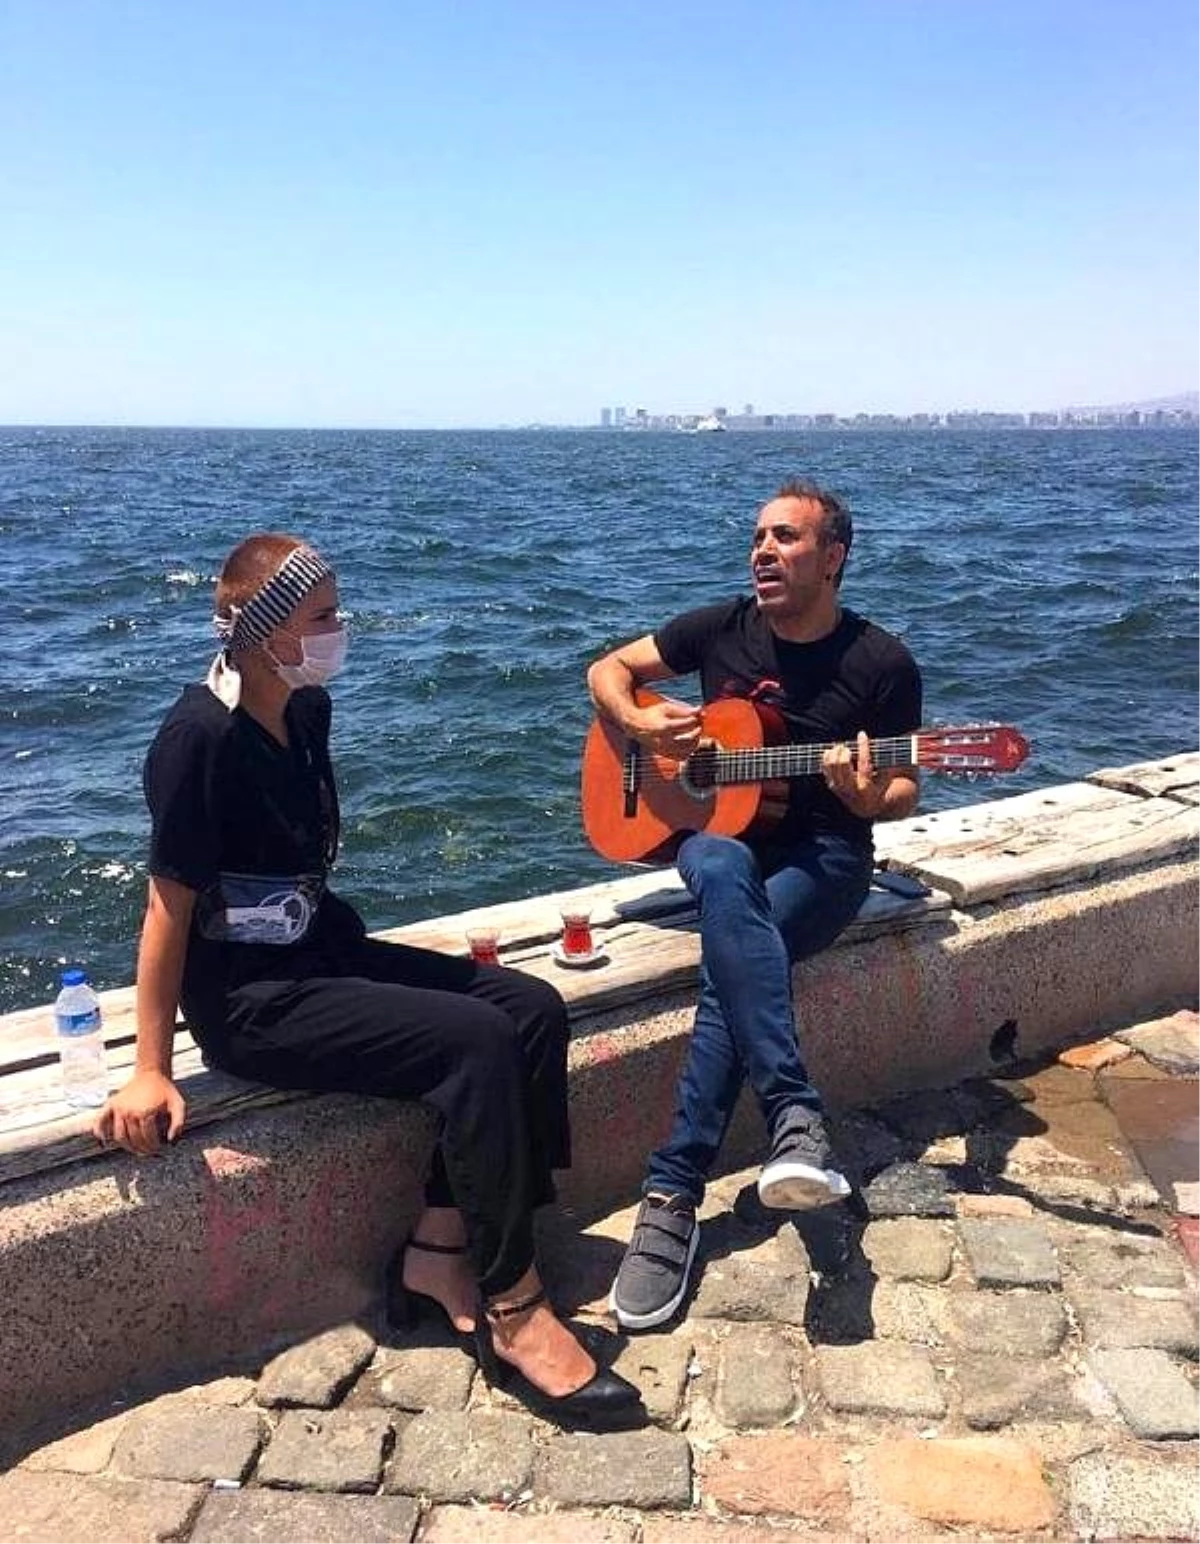 Haluk Levent, tedavi gören genç kız için şarkı söyledi